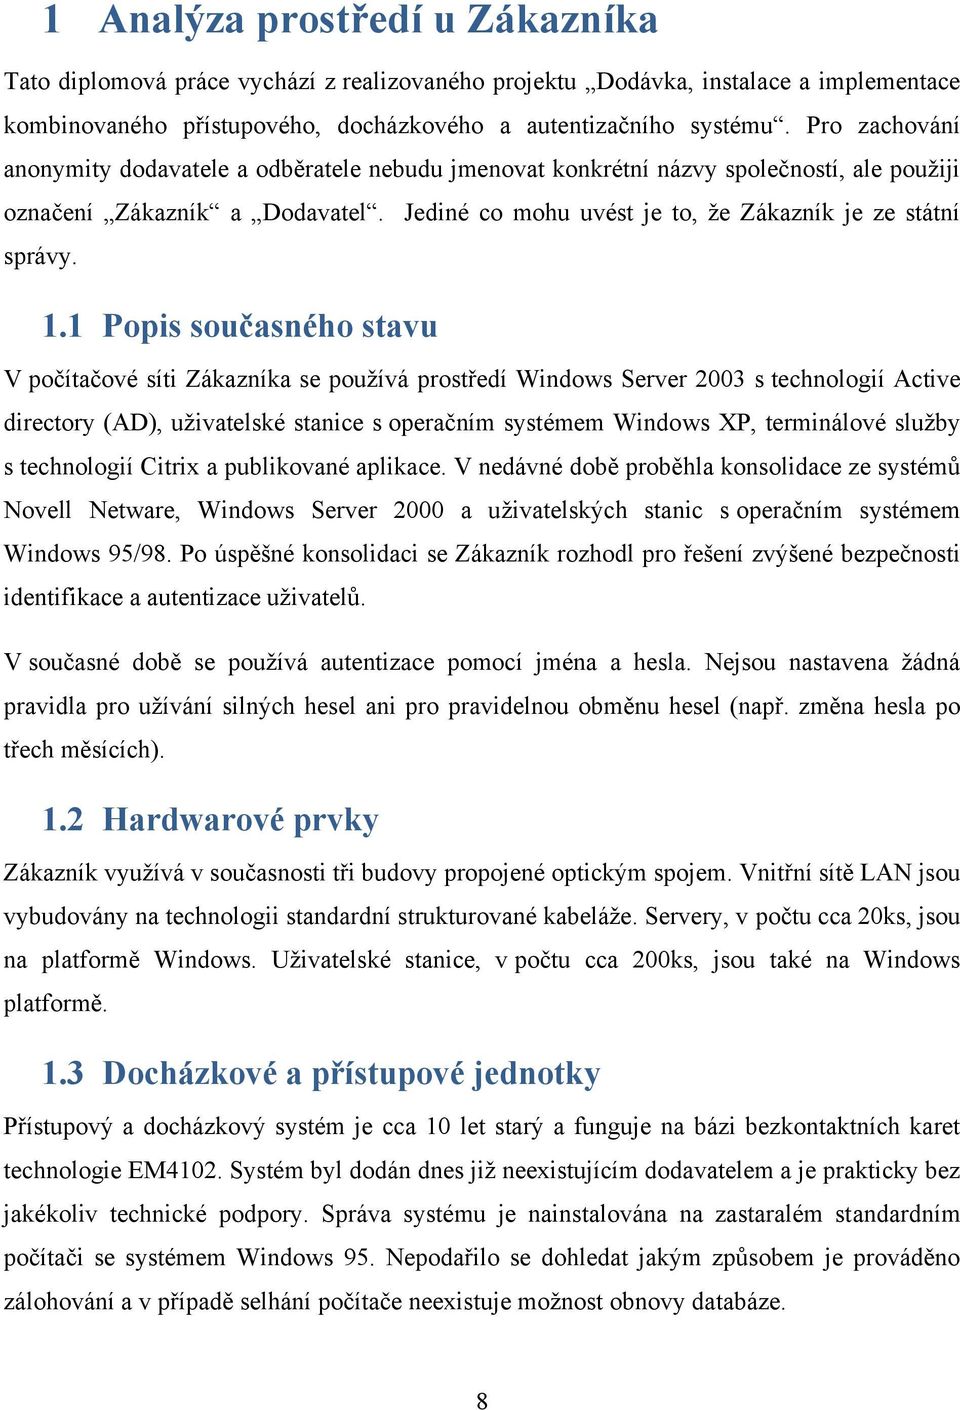 1 Popis současného stavu V počítačové síti Zákazníka se pouţívá prostředí Windows Server 2003 s technologií Active directory (AD), uţivatelské stanice s operačním systémem Windows XP, terminálové